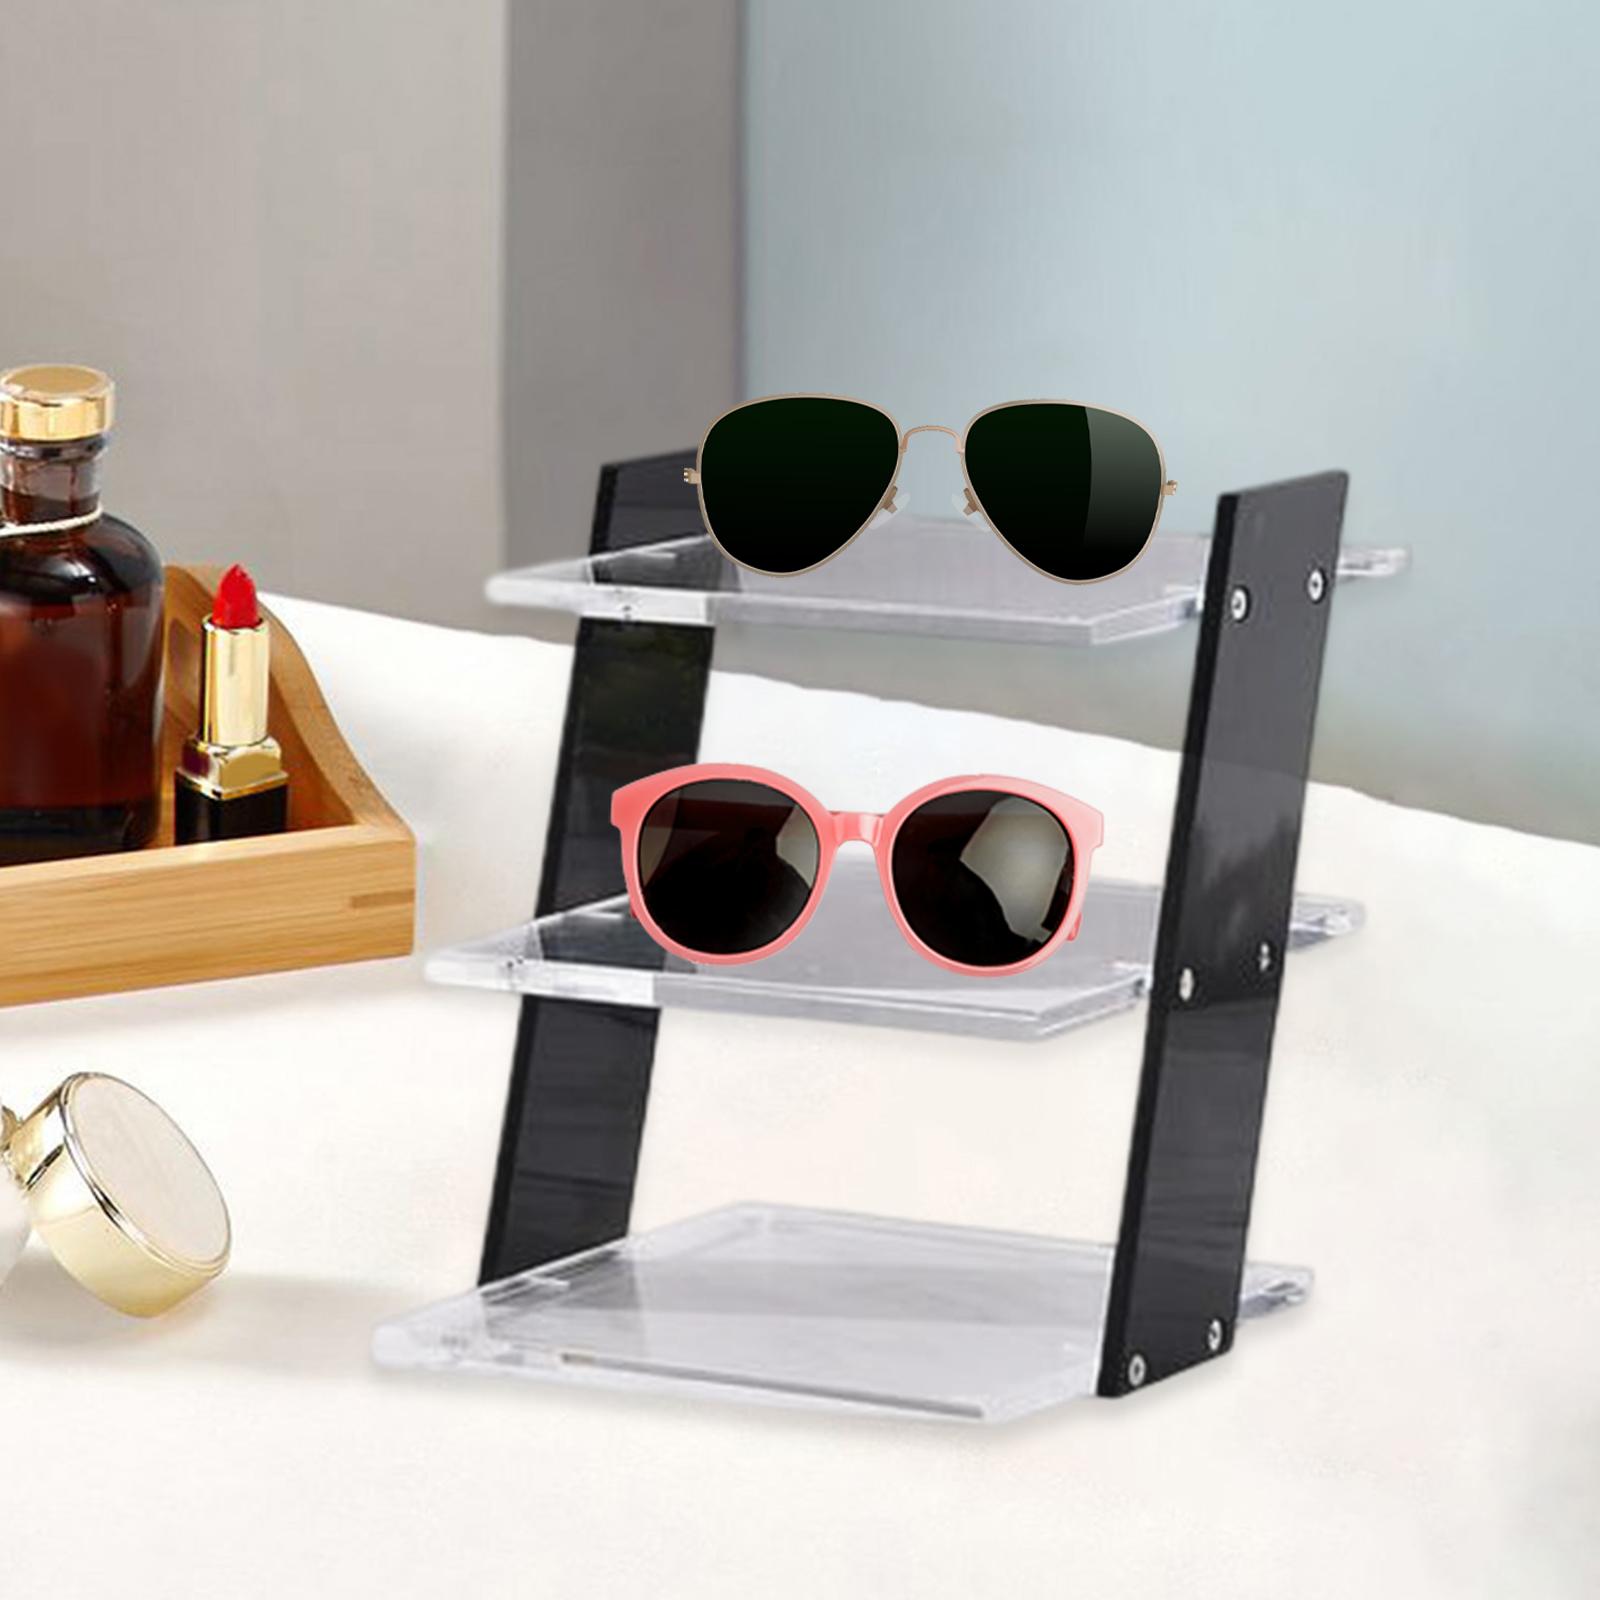 Acrylic Riser Stands 4 Steps Decorative Desktop Shelves Glasses Display Stand black